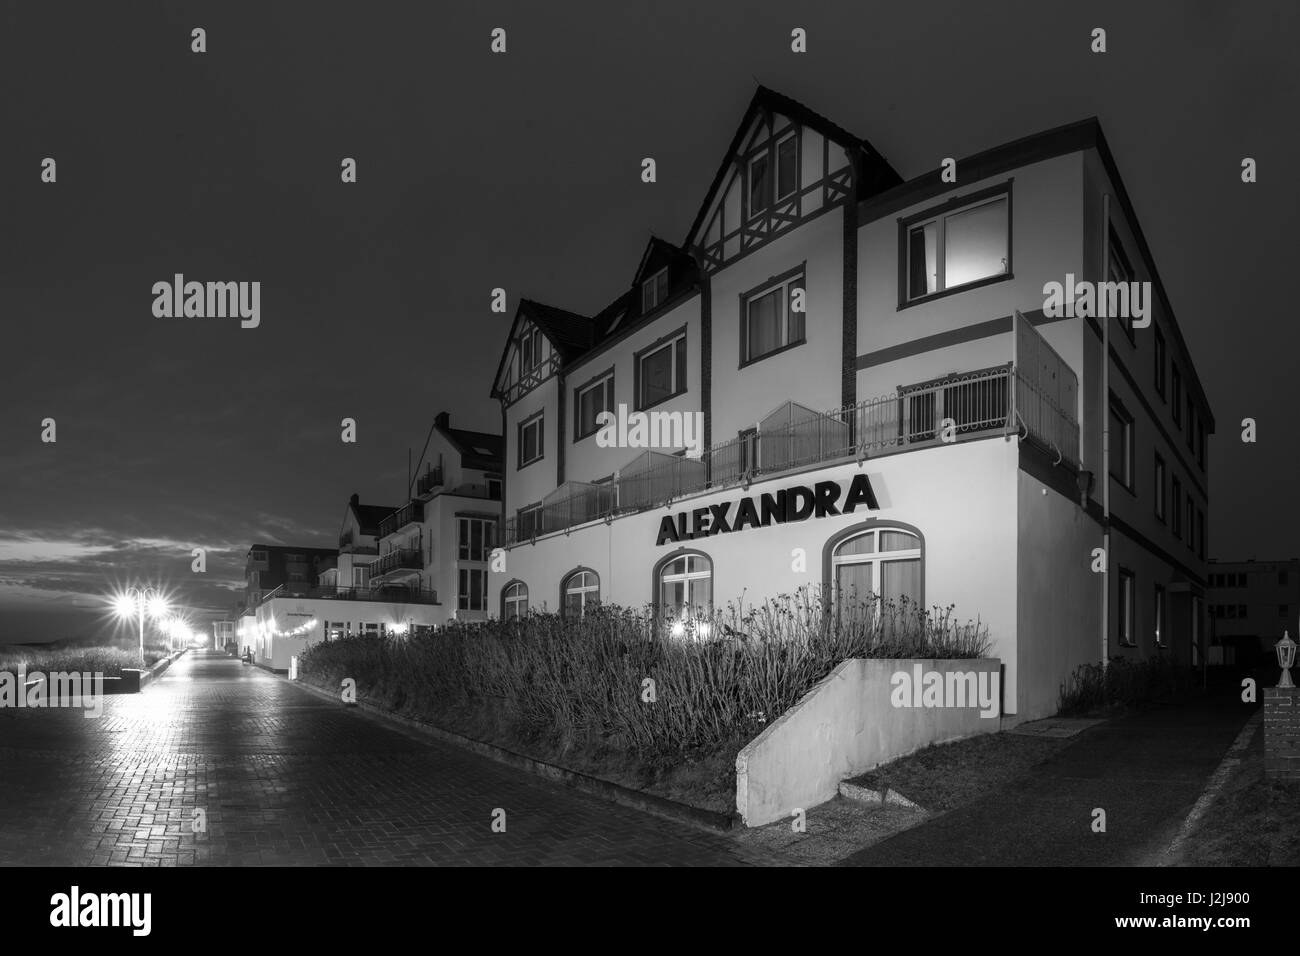 Haus Alexandra sul lungomare a Wangerooge, Germania, Bassa Sassonia, isola, isola del Mare del Nord, inverno Foto Stock